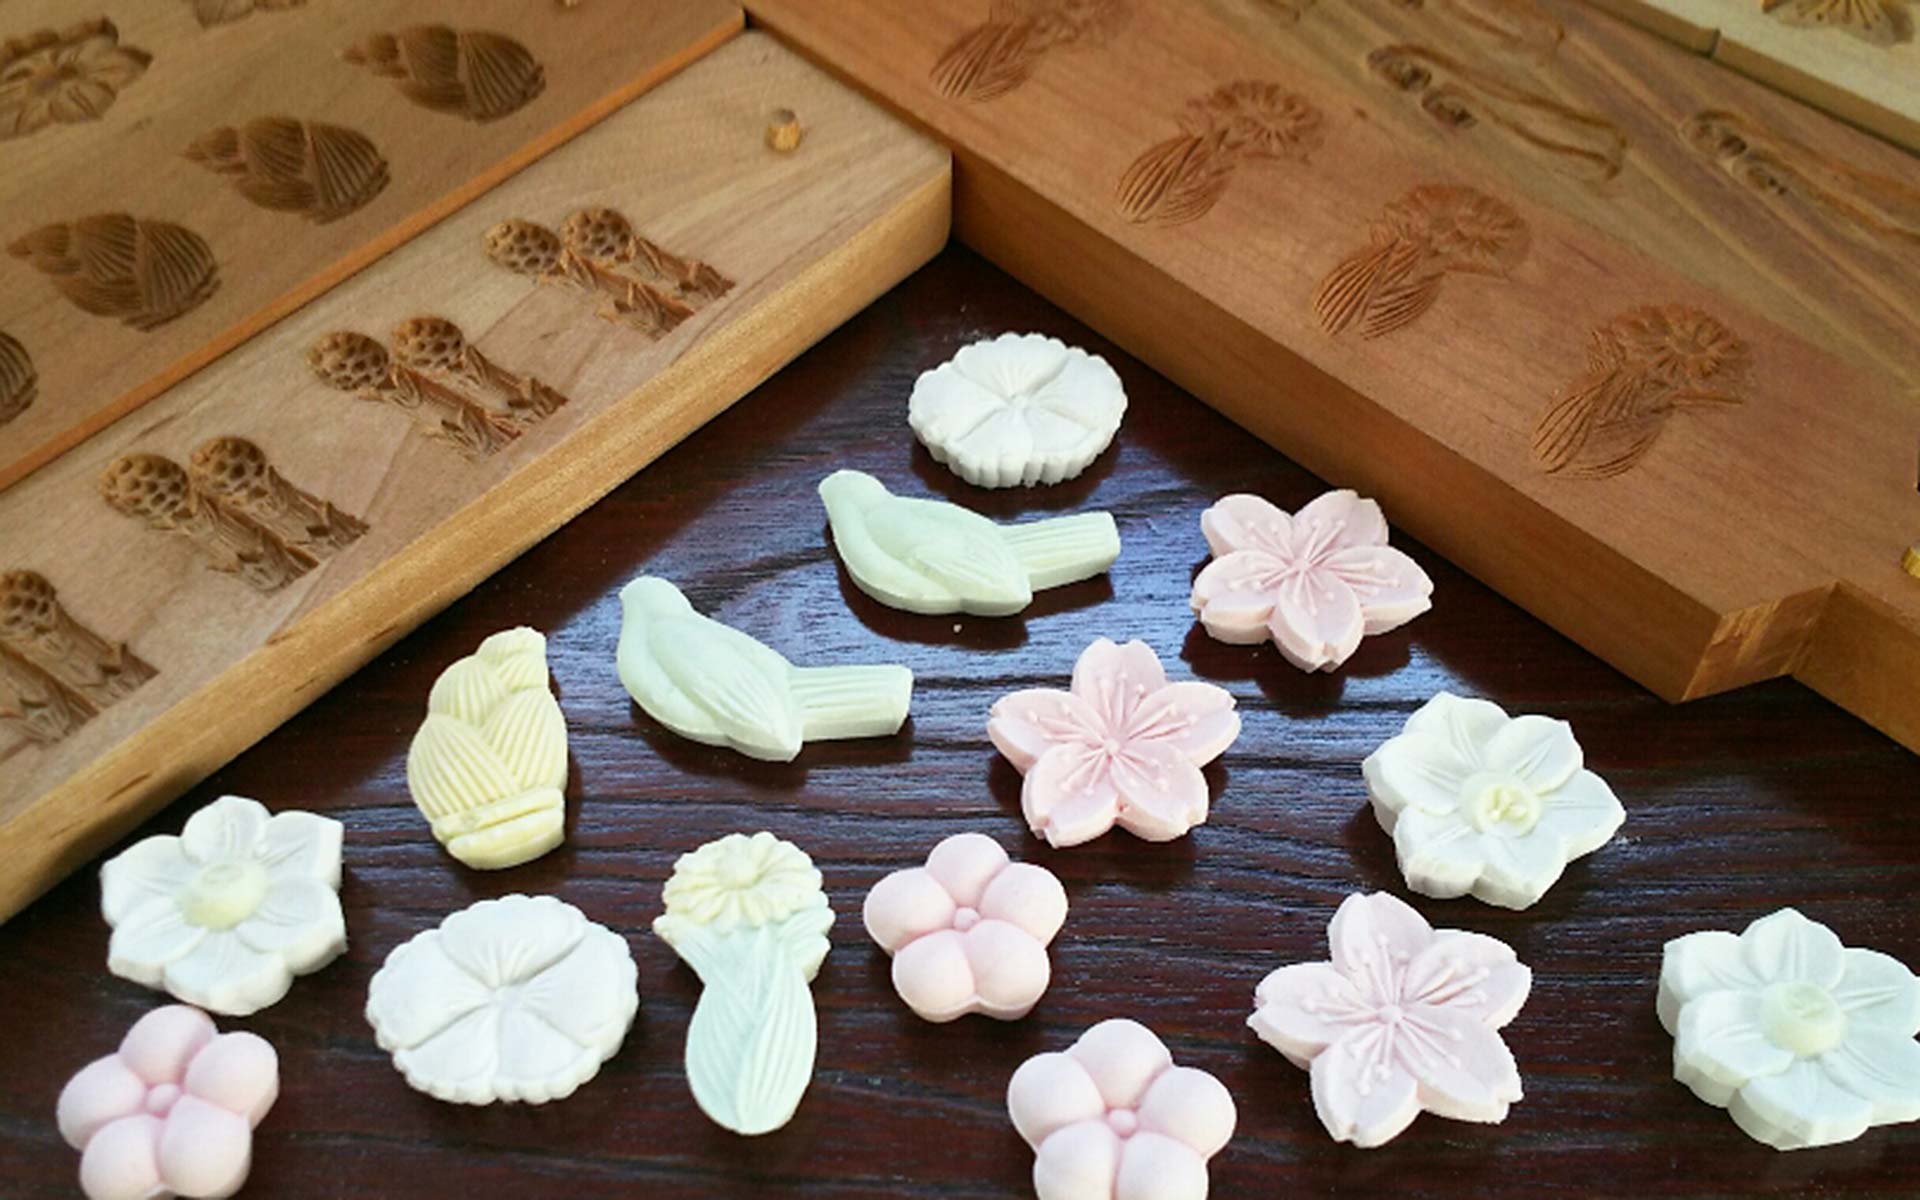 日本伝統和菓子おしどり鶴二羽の木彫木型です。芸術です